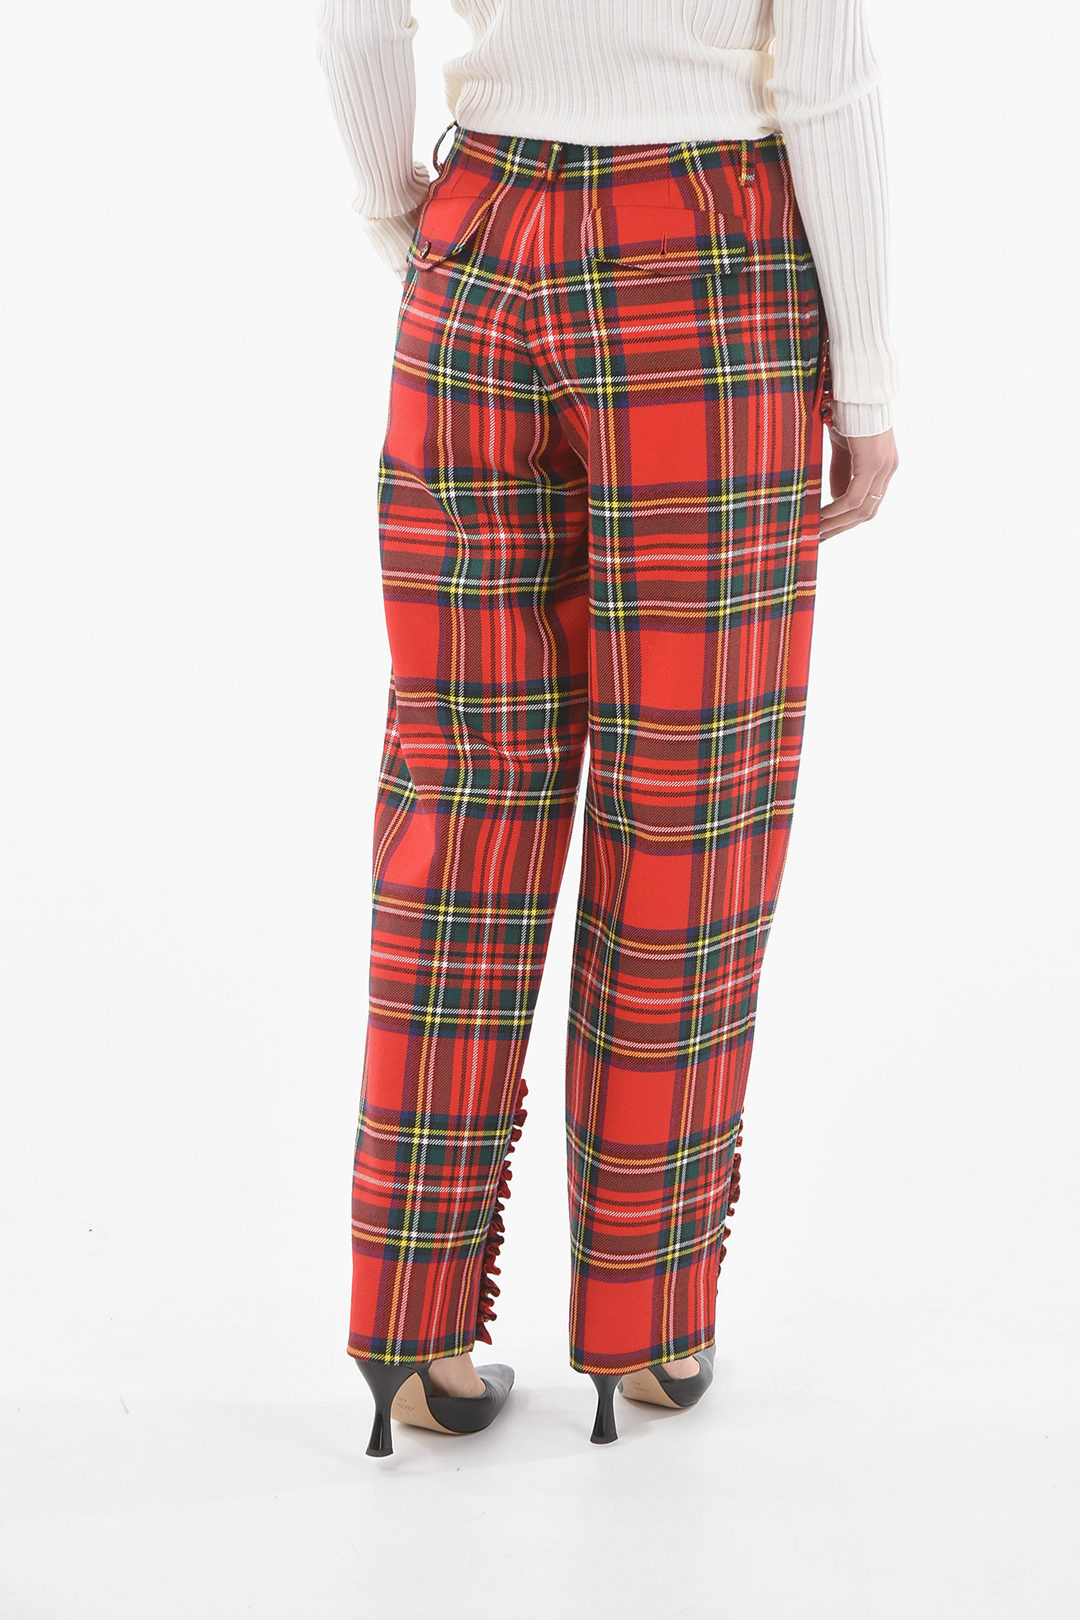 Scottish Tartan Plaid 'Black Watch' Tux Trousers - Acustom Apparel